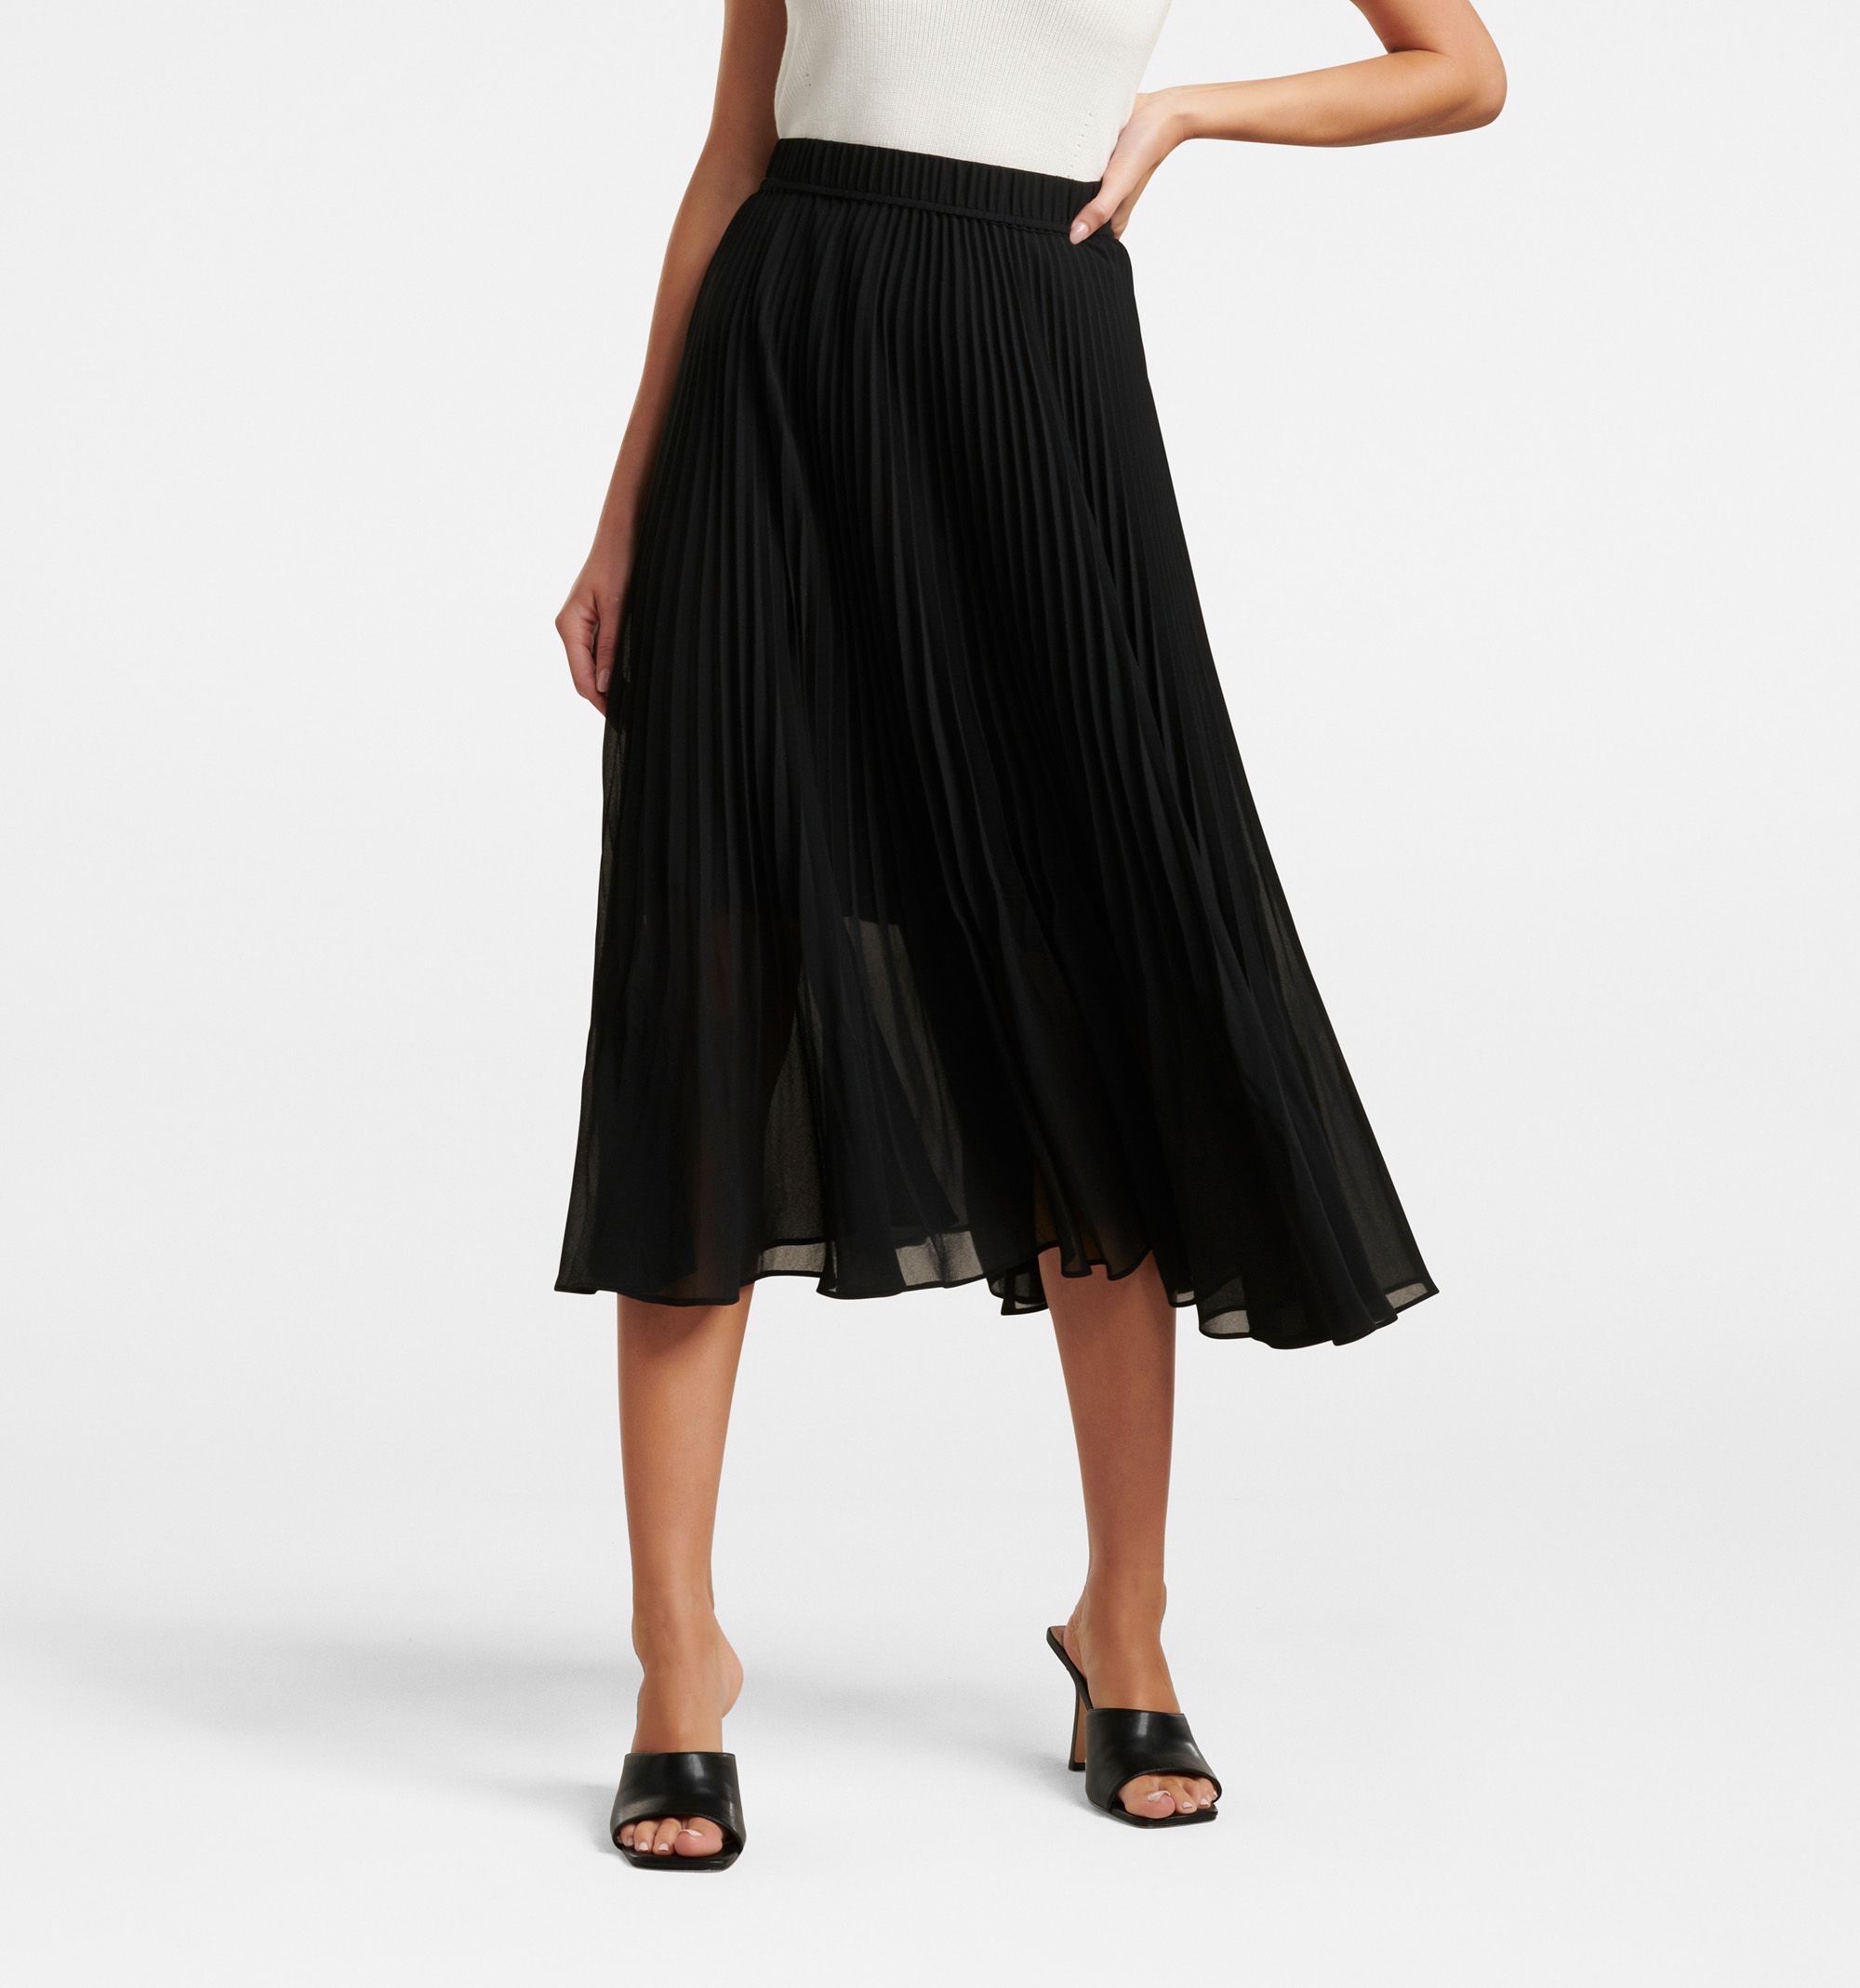 Buy Forever New Black Harper Pleated Skirt from the Next UK online shop